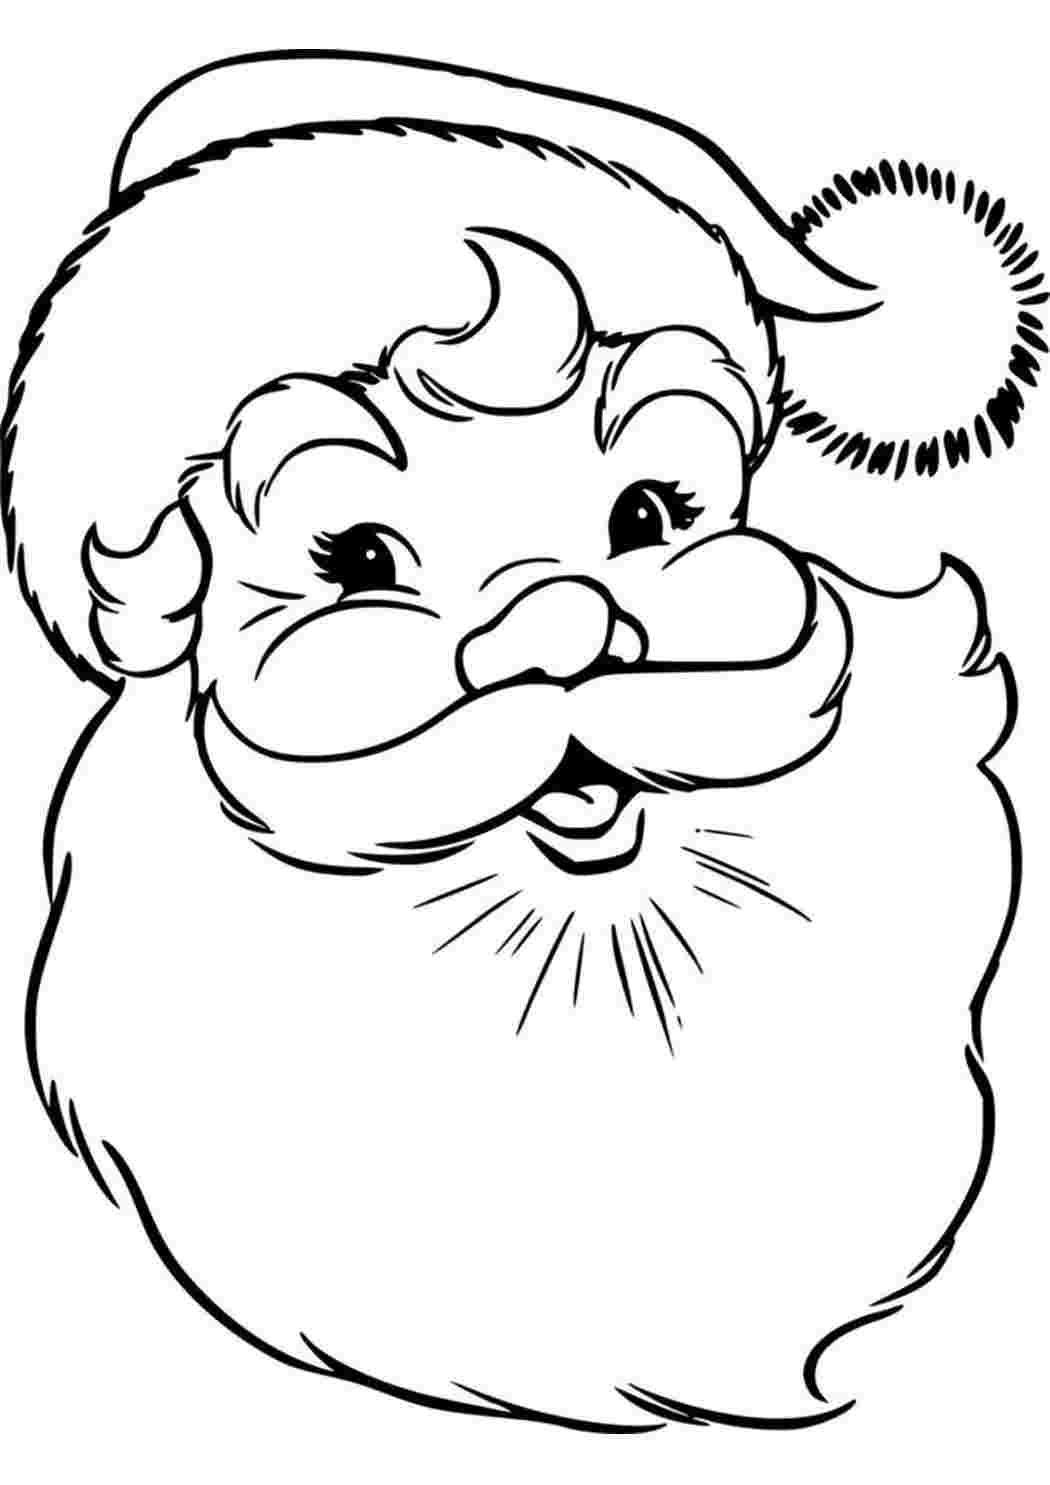 Раскраски Лицо Деда Мороза раскраска. Скачать раскраски бесплатно. Лицо Деда Мороза раскраска. Много раскрасок.